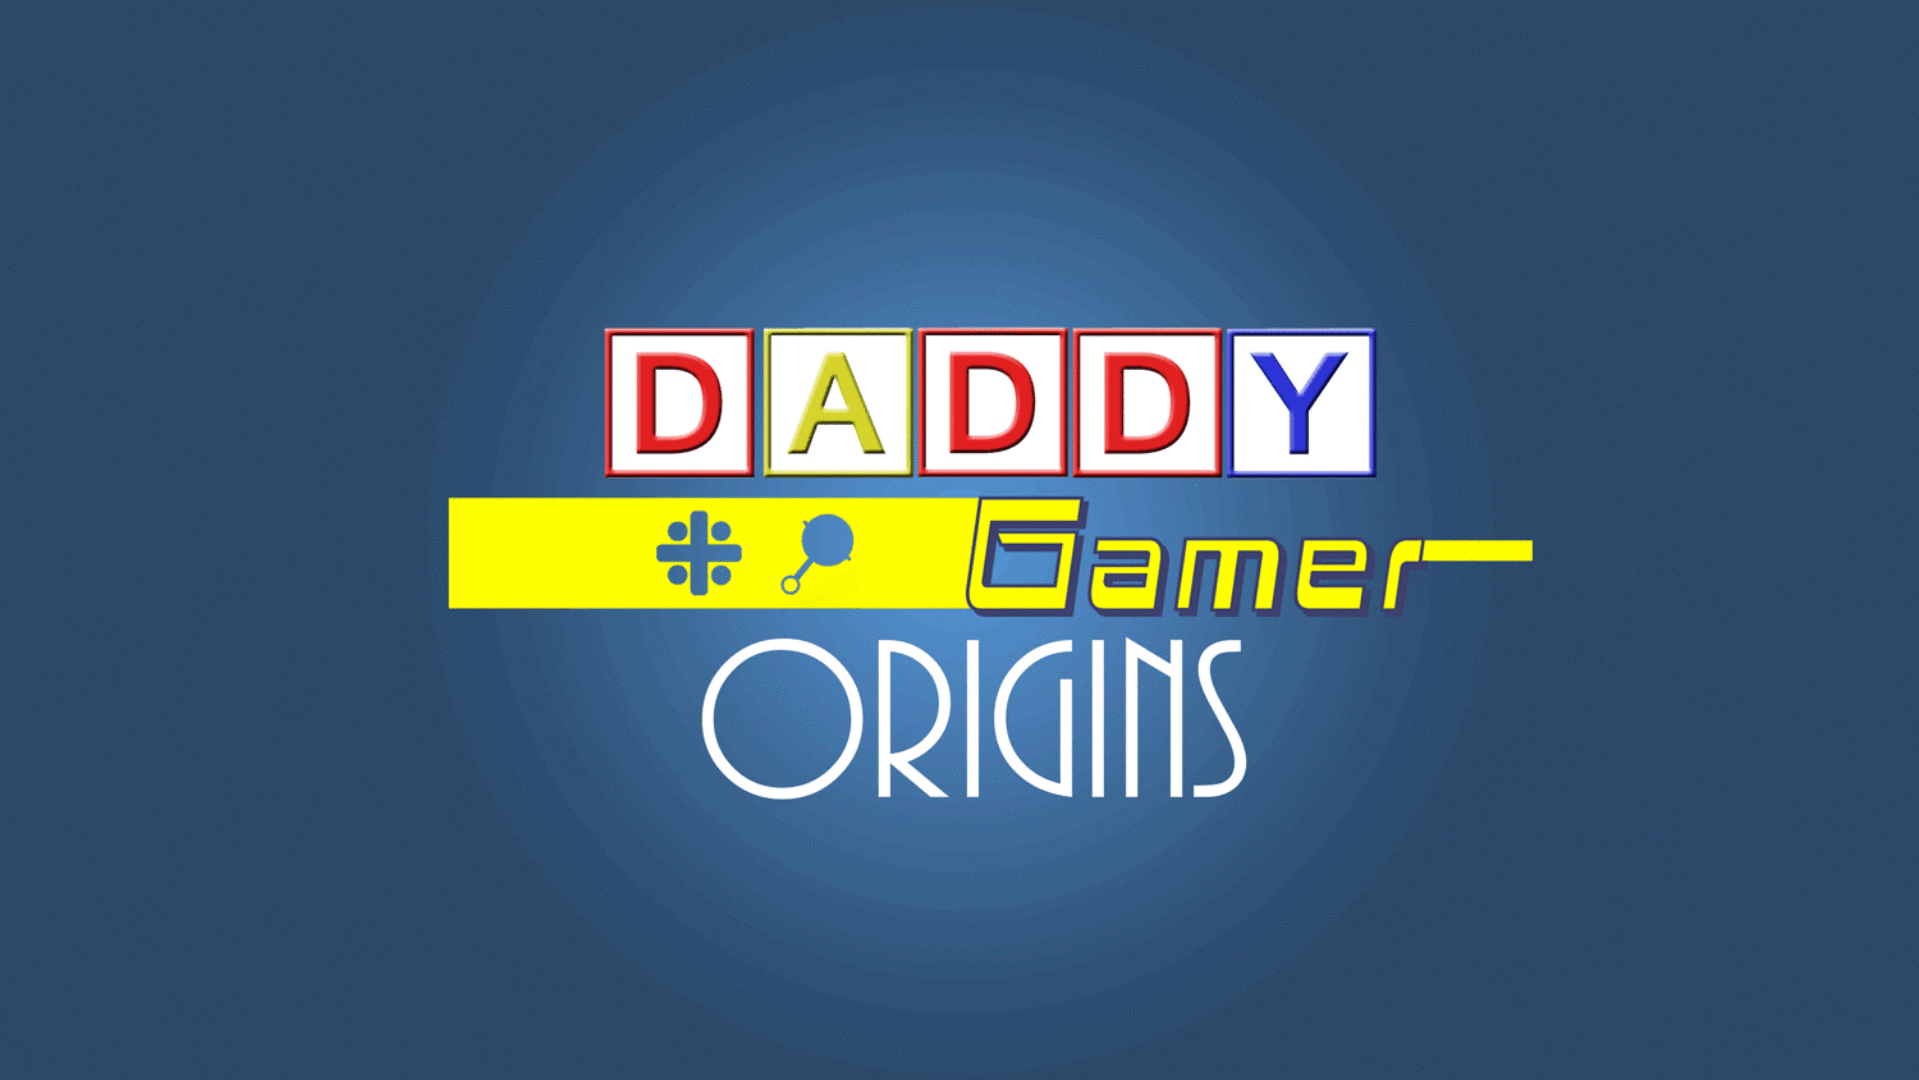 Daddy Gamer: Origins